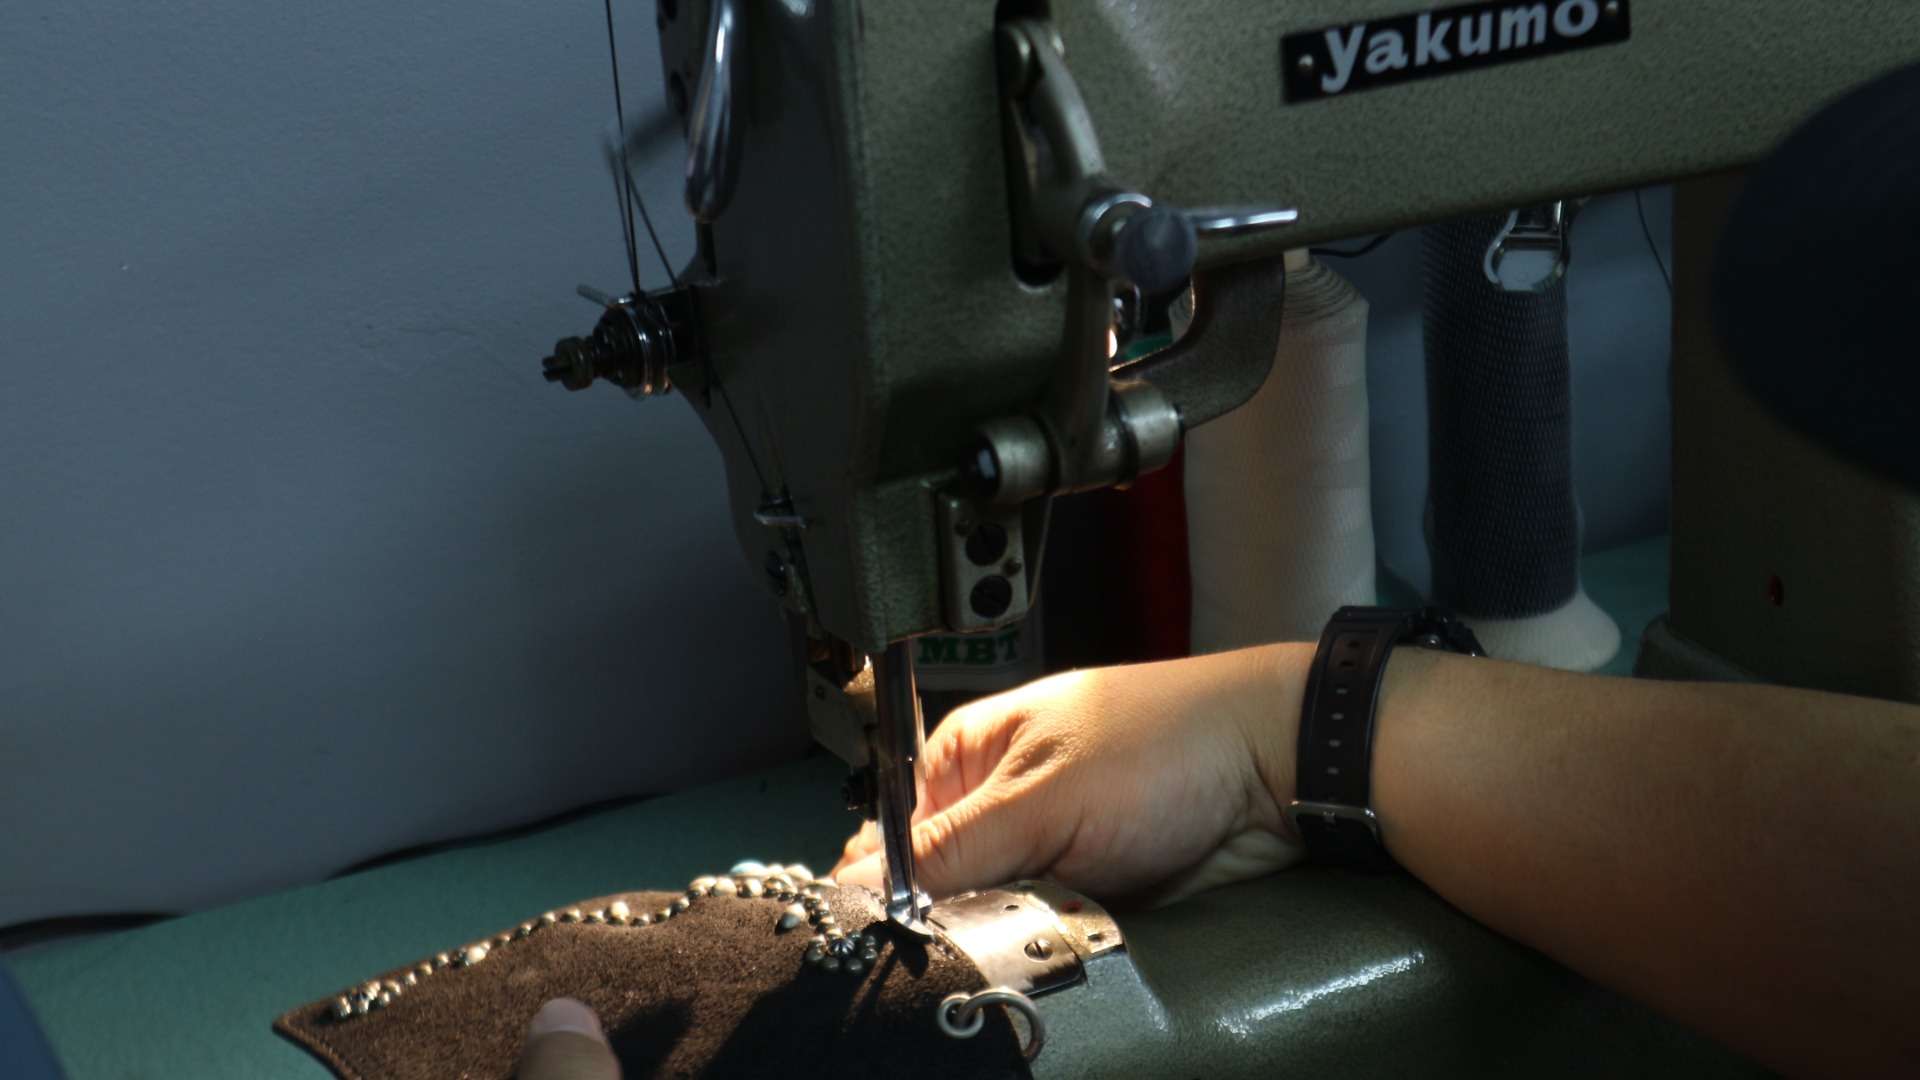 革製品に使用する糸の種類にこだわって縫製しております